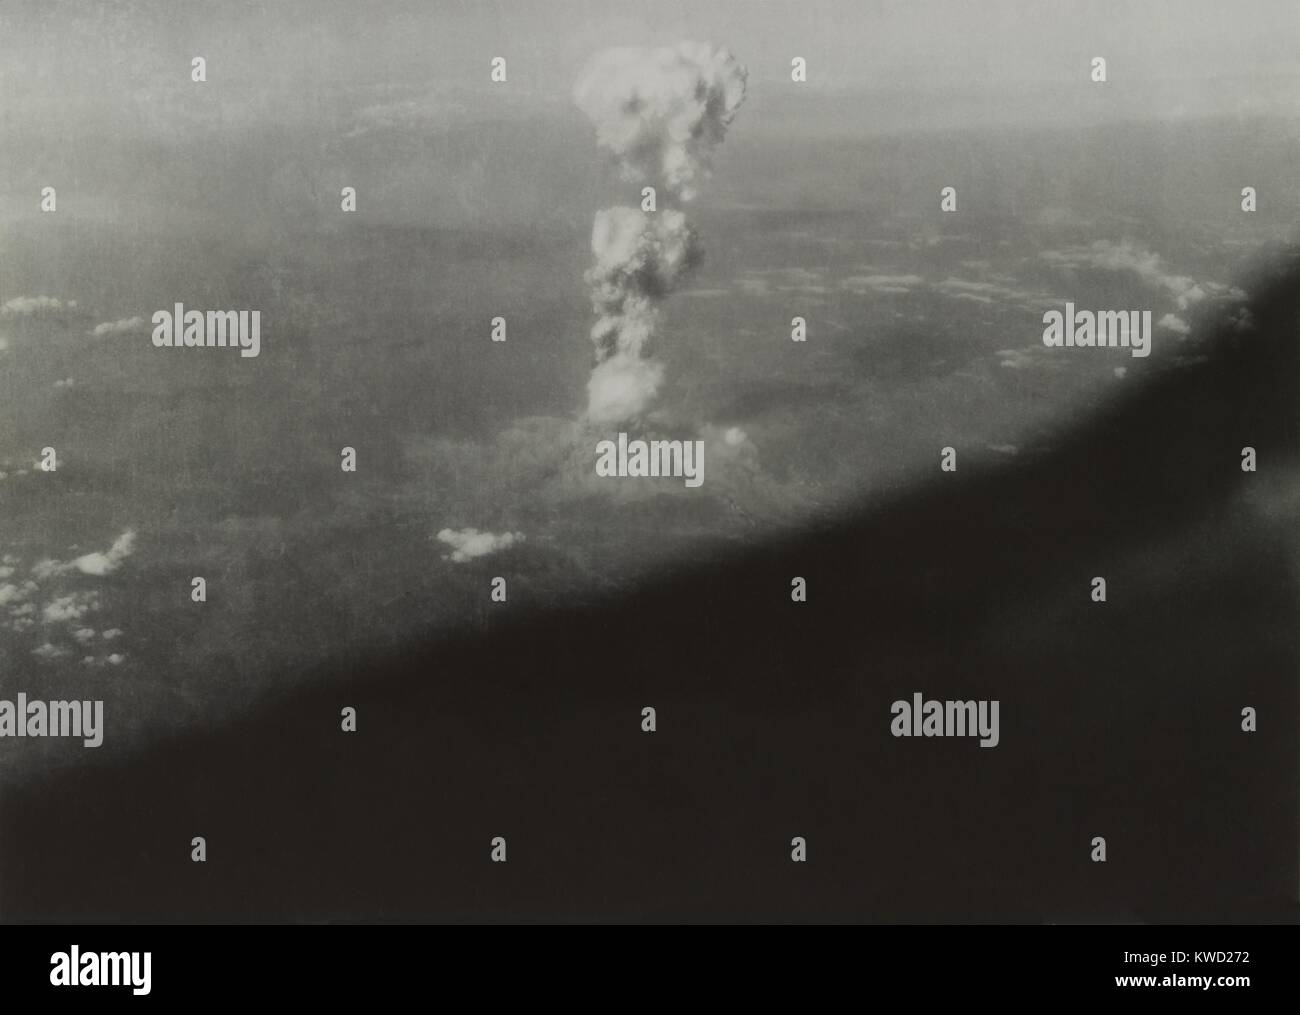 Atompilz von der Atombombe auf Hiroshima aus der Enola Gay, August 6, 1945. Foto umfasst die Flügel der B-29, da es die Bomber fliegen weg von Ground Zero die Auswirkungen von Explosionen, die Druckwelle (BSLOC 2017 20 189 zu minimieren). Stockfoto